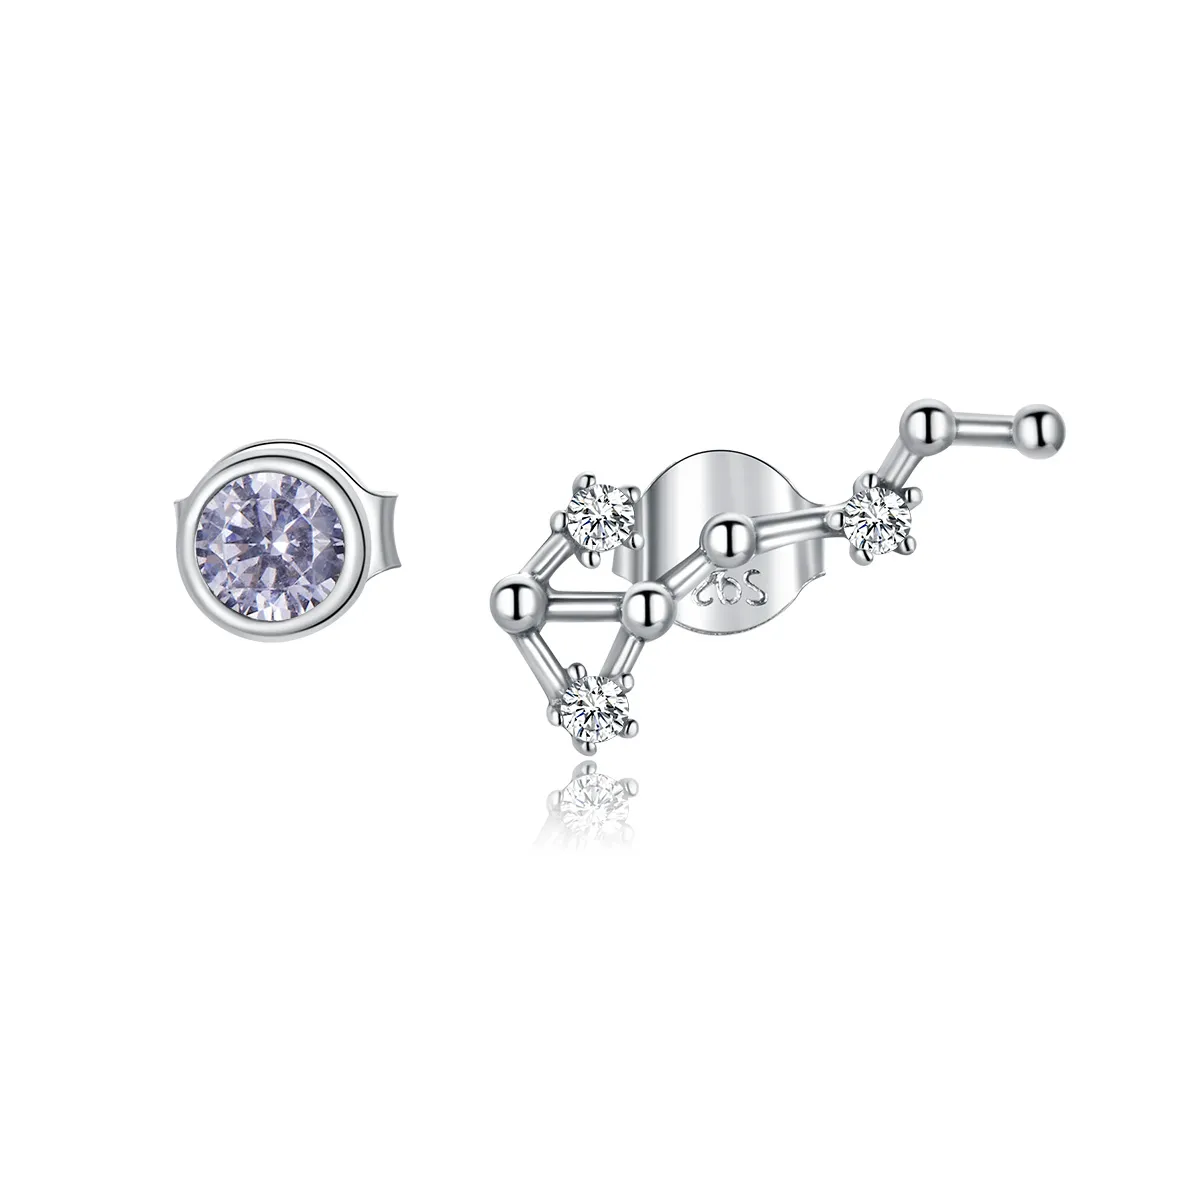 Pandora Style Silver Starry Sky Stud Earrings - SCE912-8